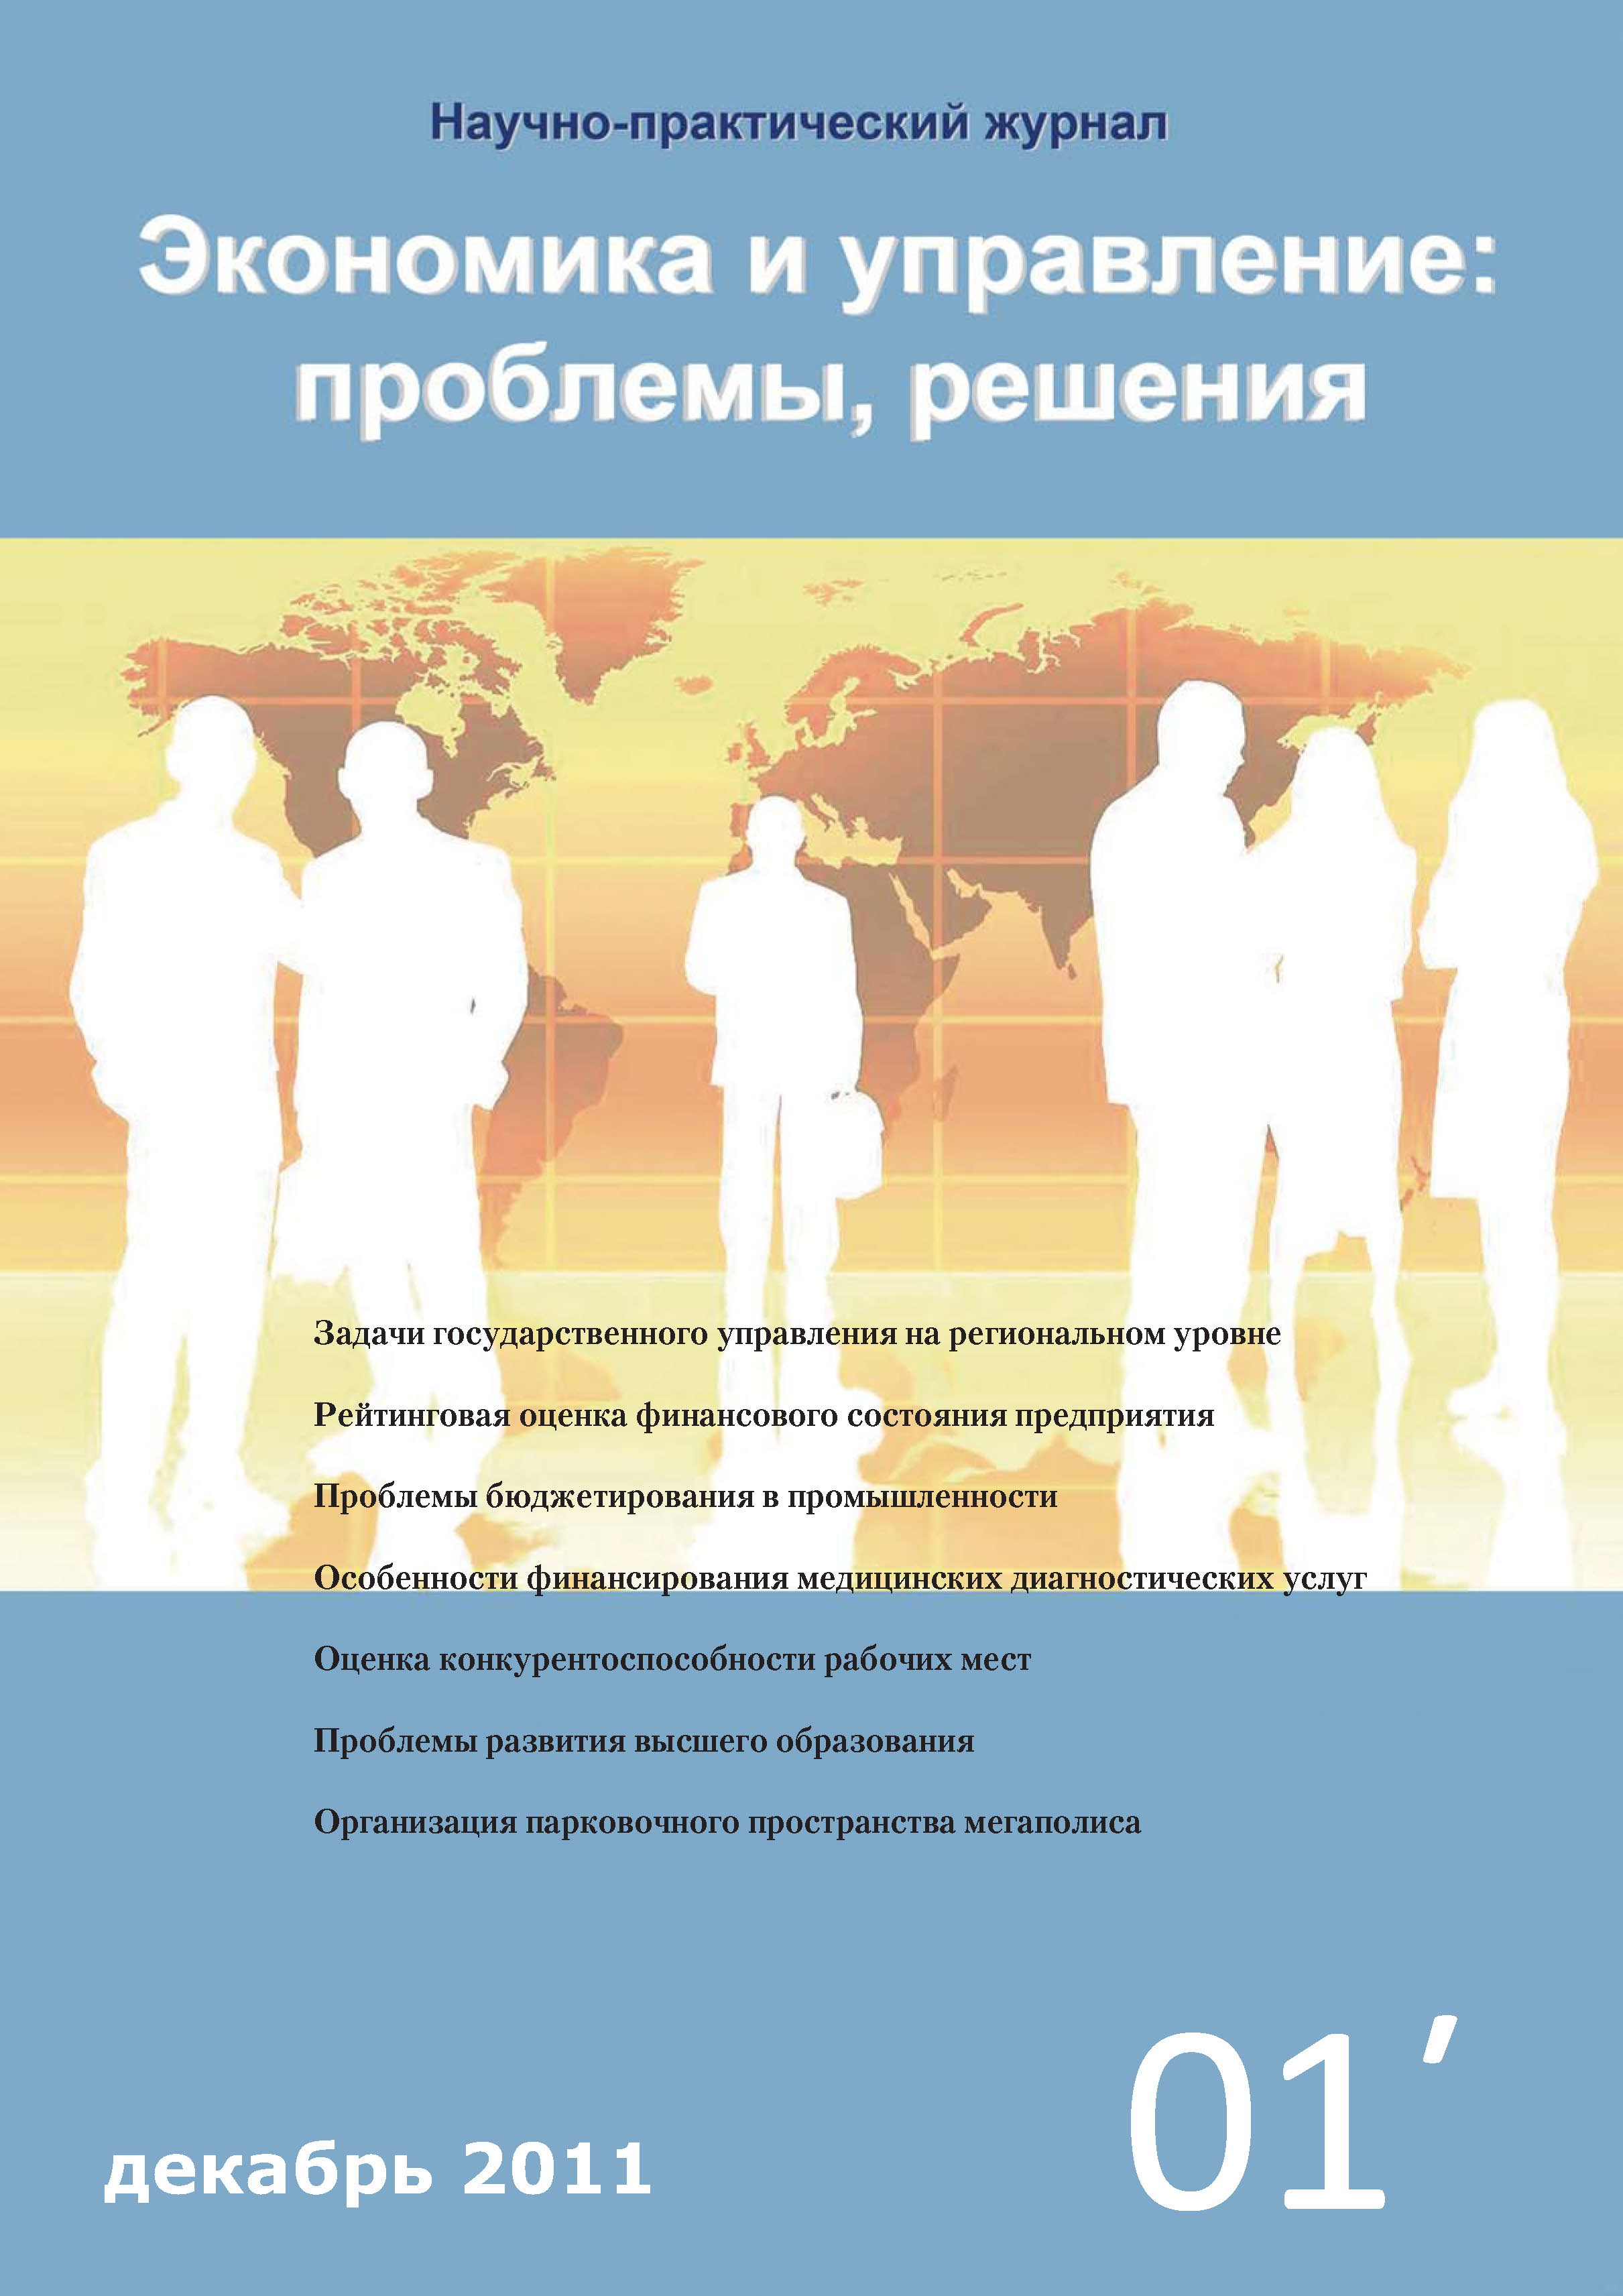 Экономика и управление: проблемы, решения №01/2011